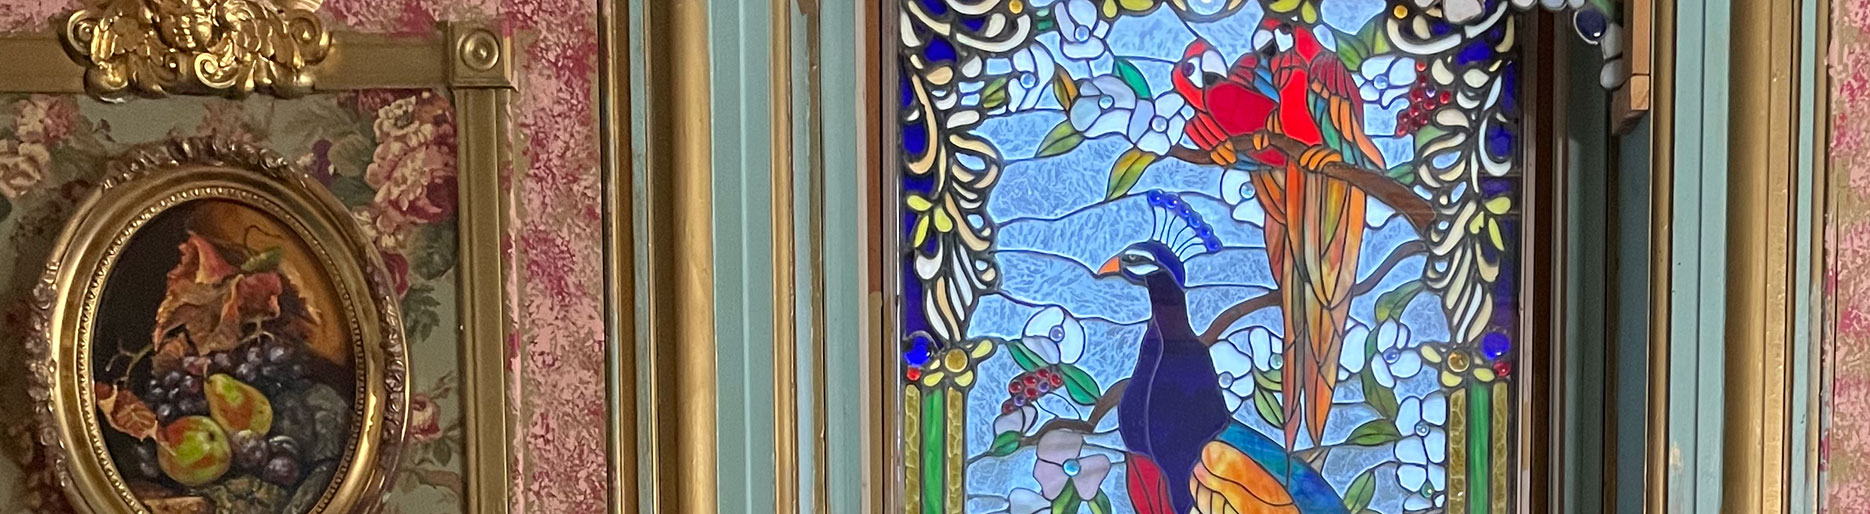 Dielmann Kaiser House Peacock Stained Glass